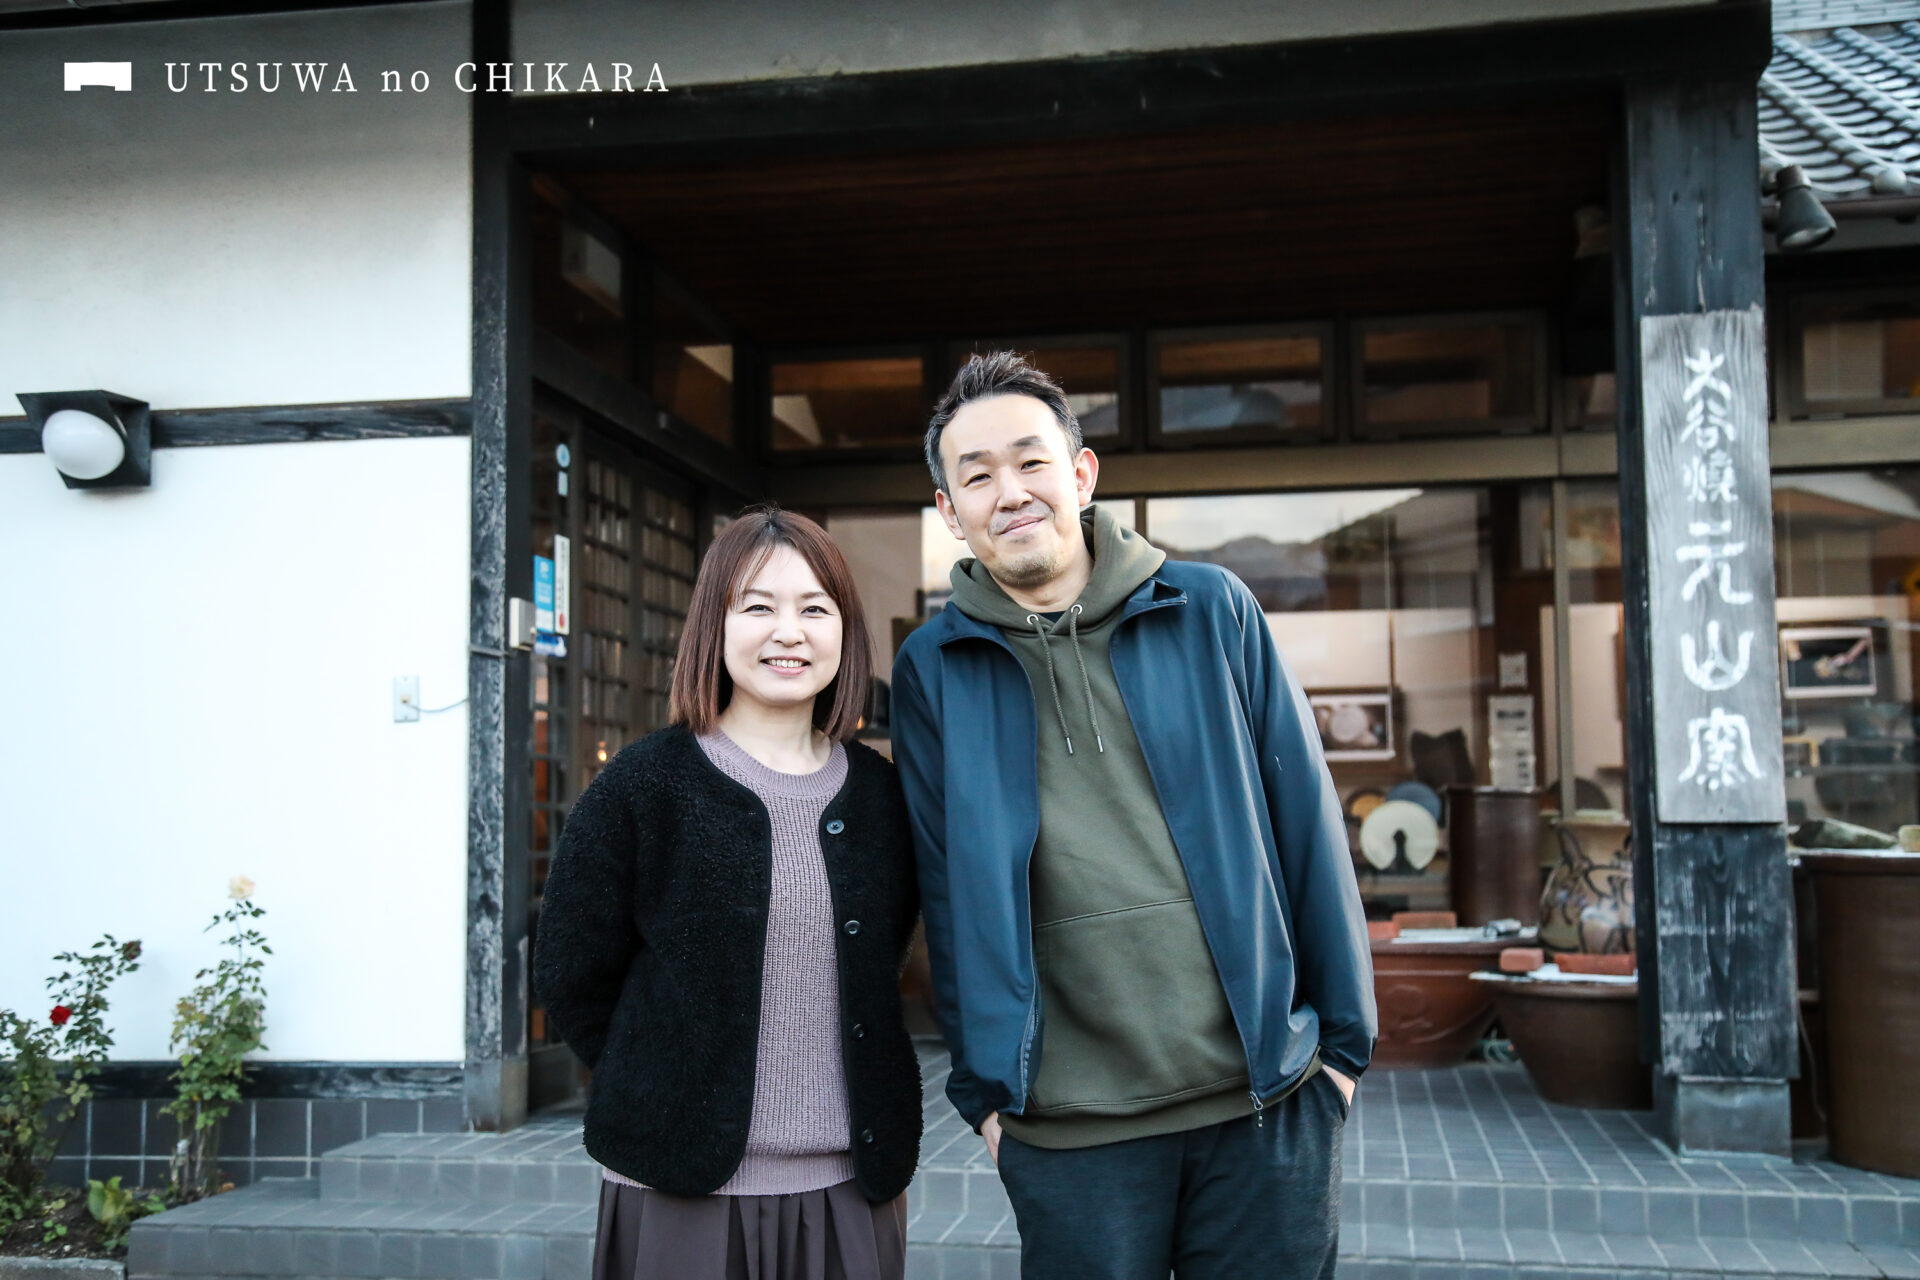 十代の重みを感じる看板を携えるギャラリーの前で。田村さんと奥様の景子さん。仲良しなお二人に癒されます。